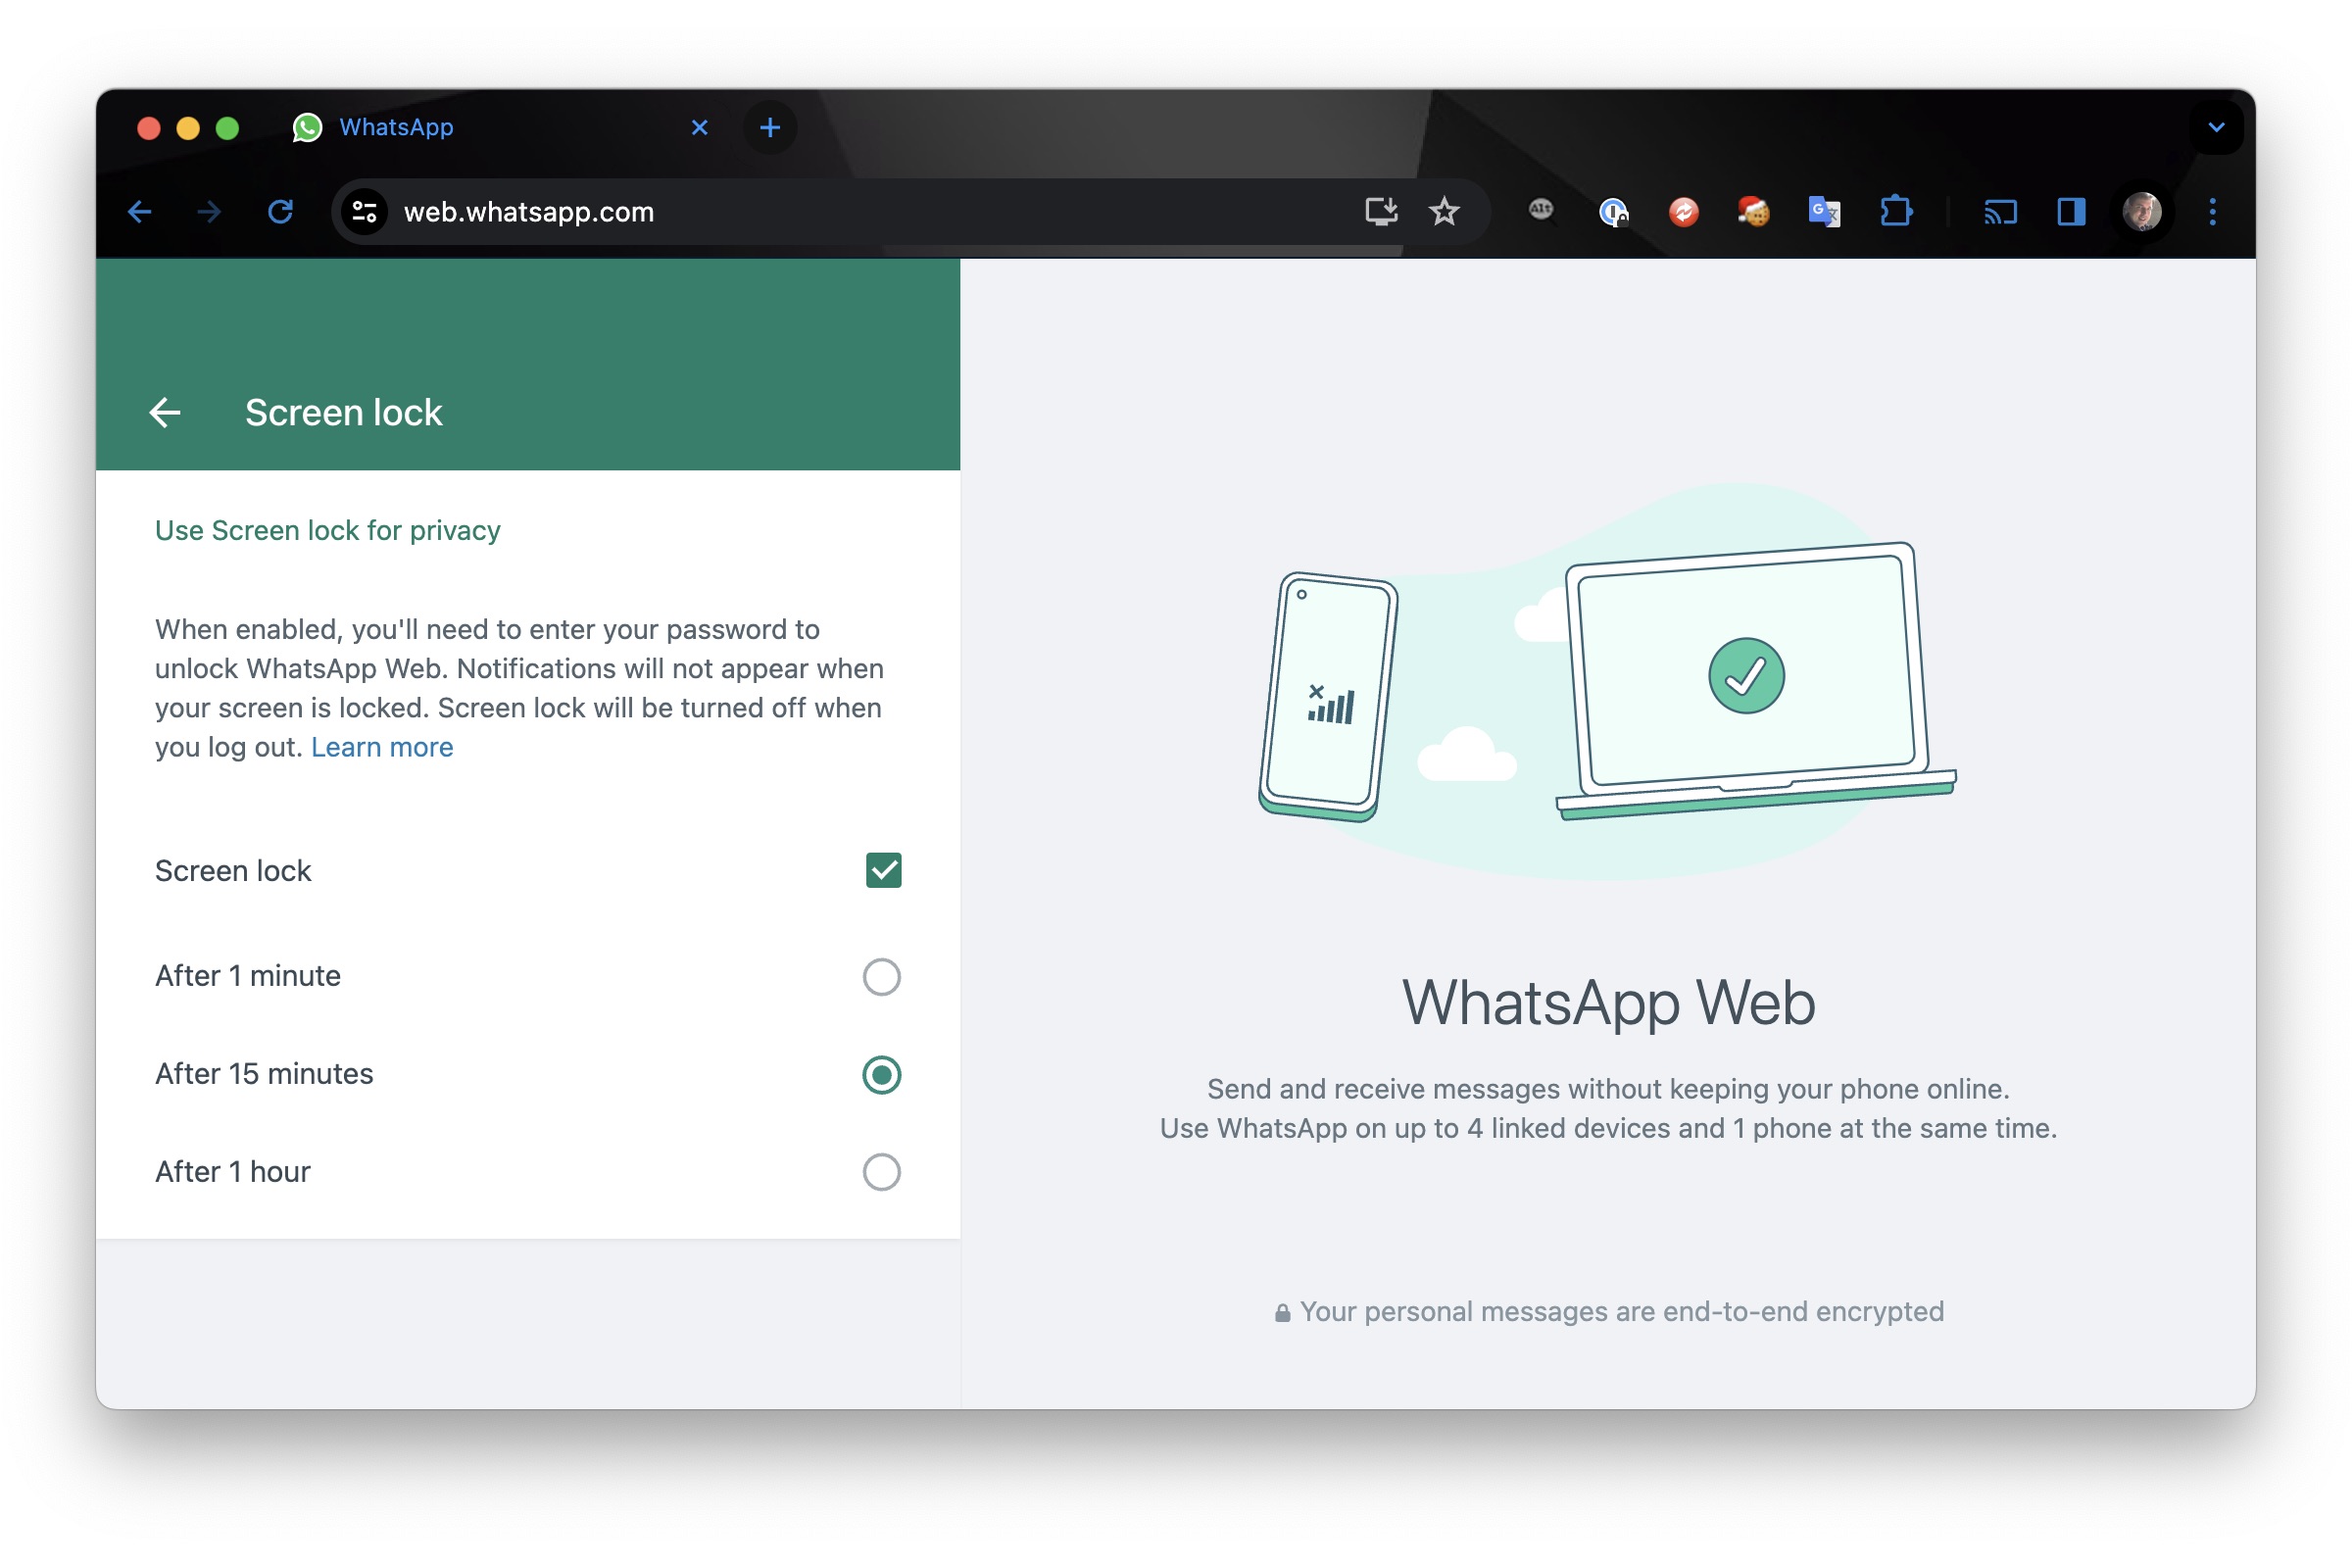 WhatsApp Web screen lock settings in Chrome.